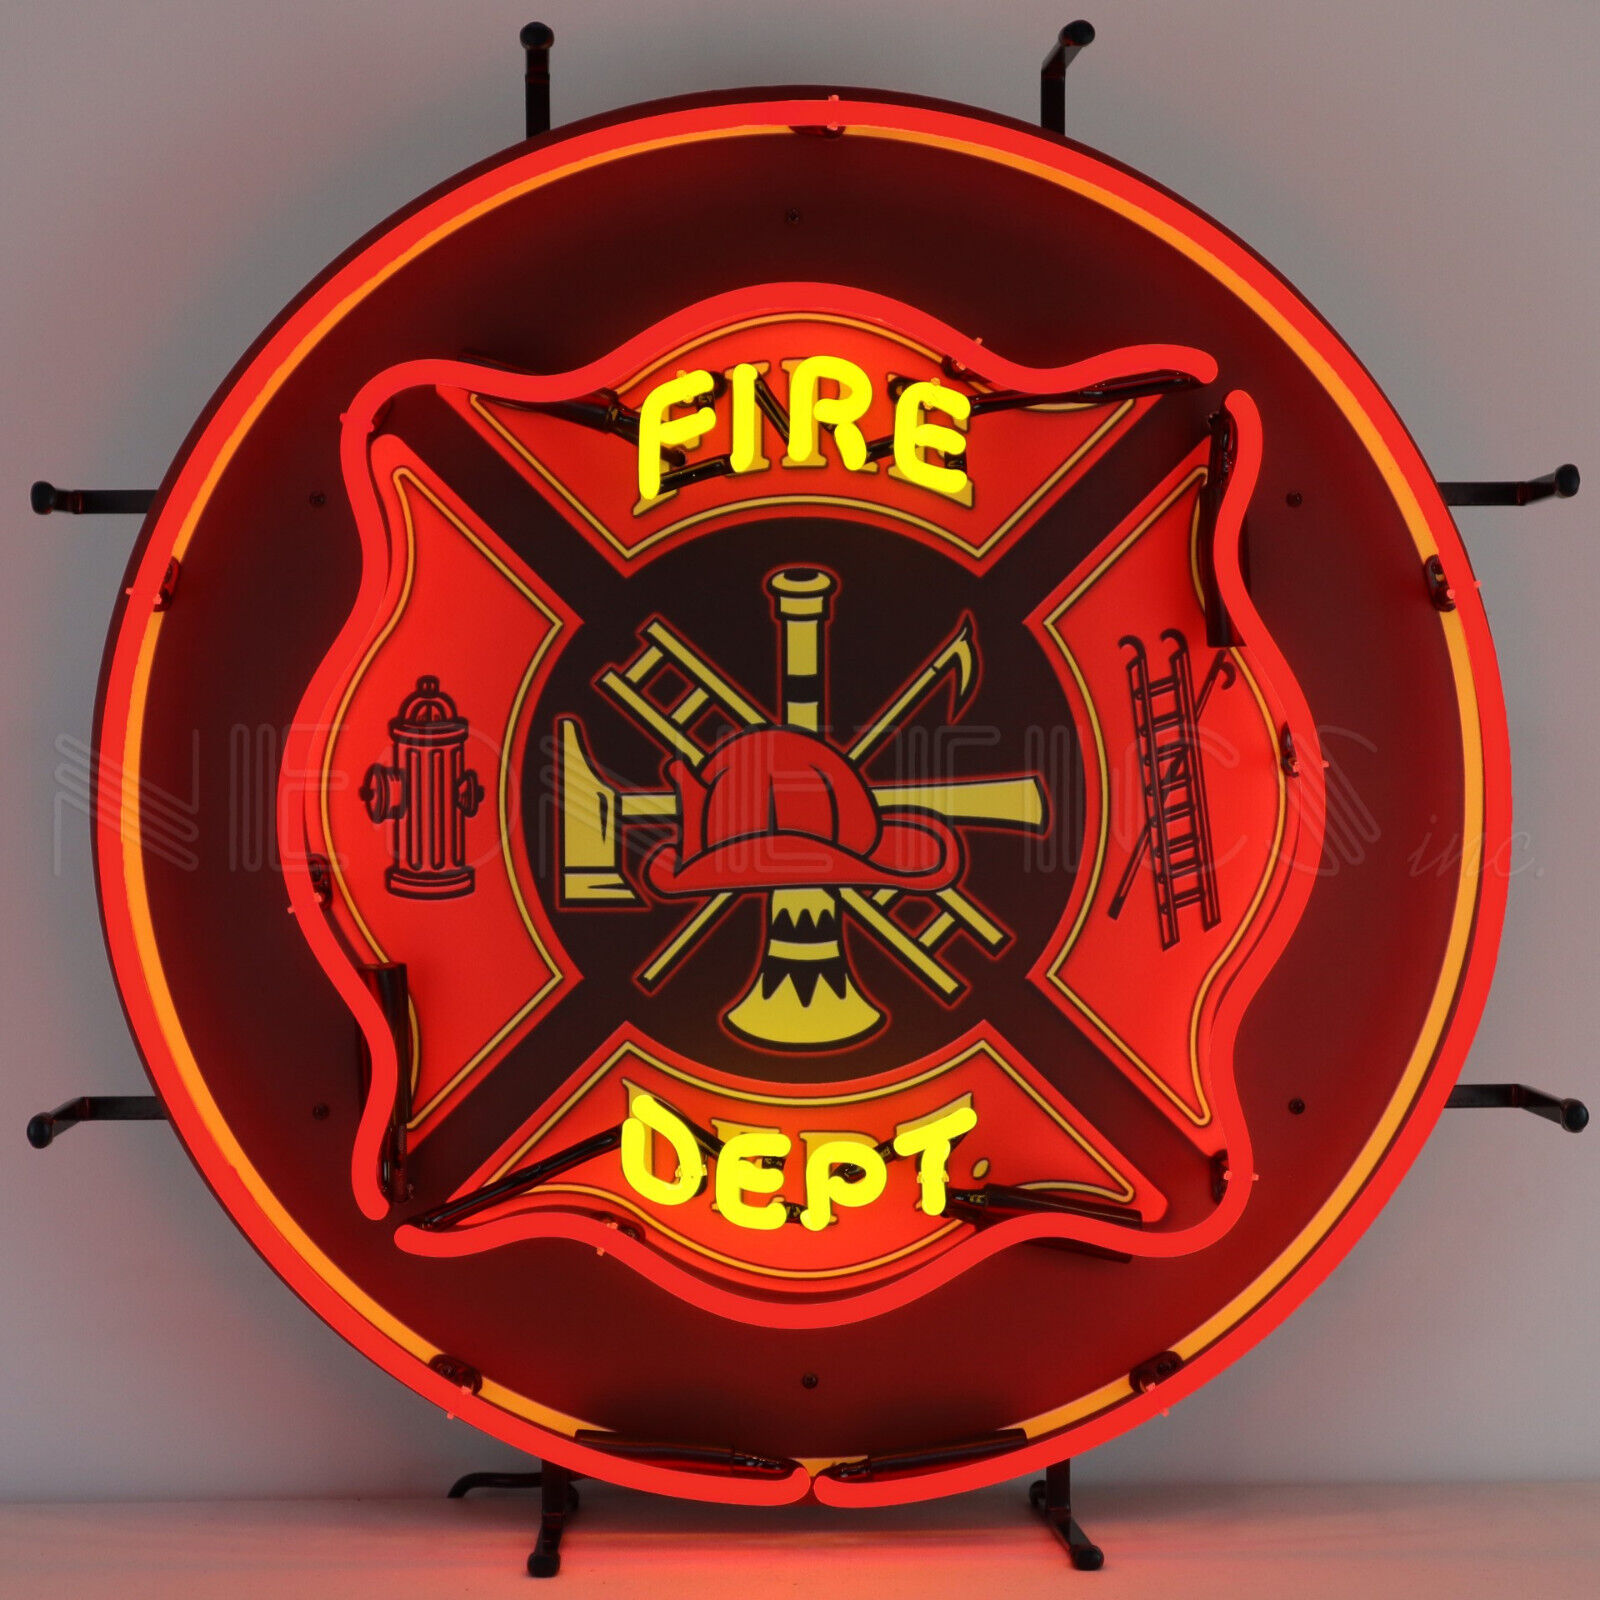 Fire Department Neon sign dads garage wall lamp light Firehouse Dept helmet hook